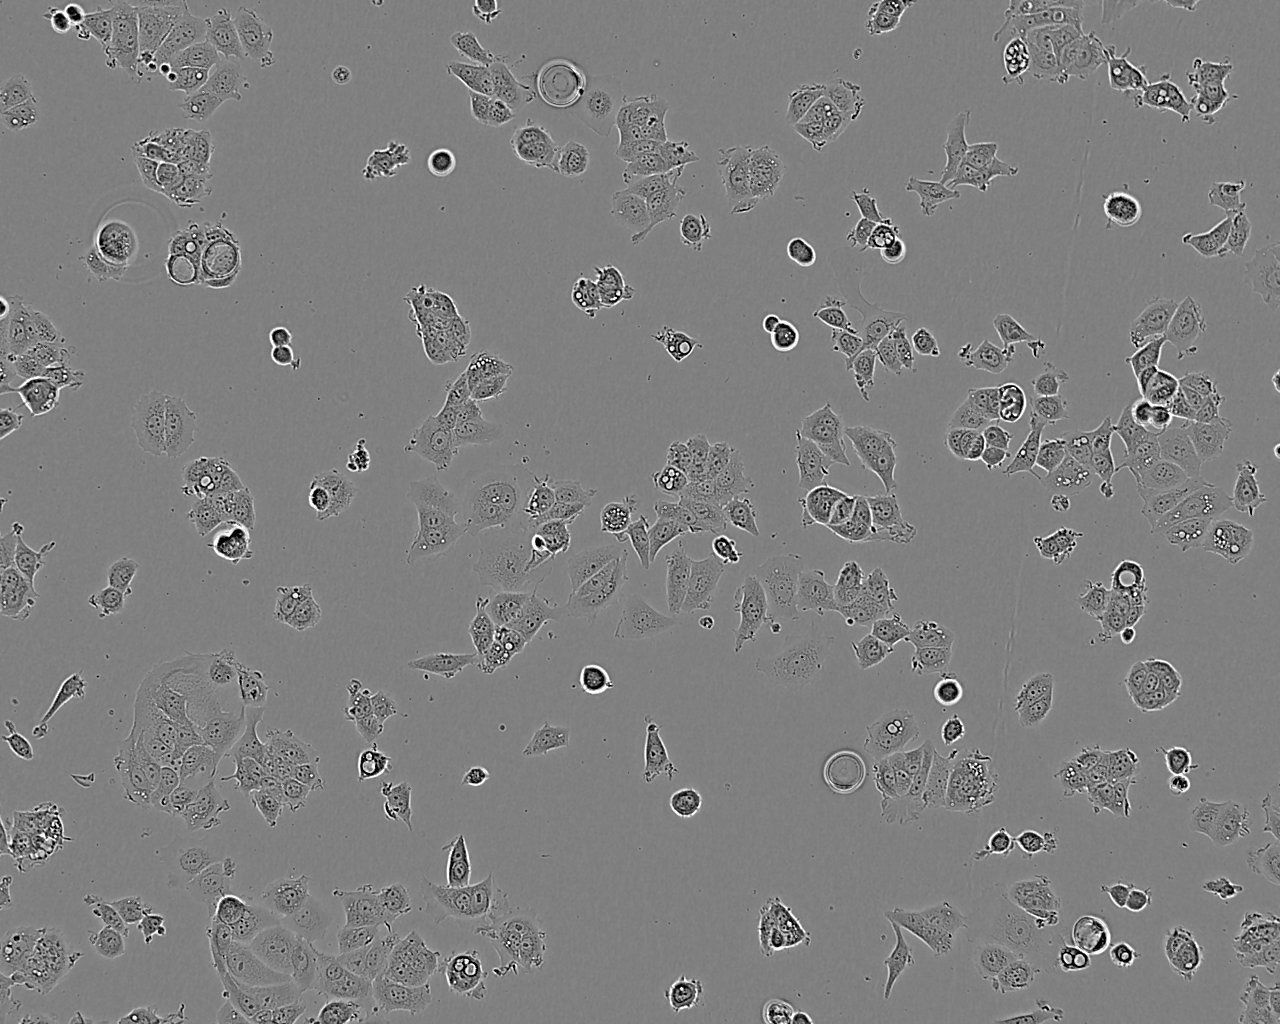 NCI-H358 Cells|人非小细胞肺癌细胞系